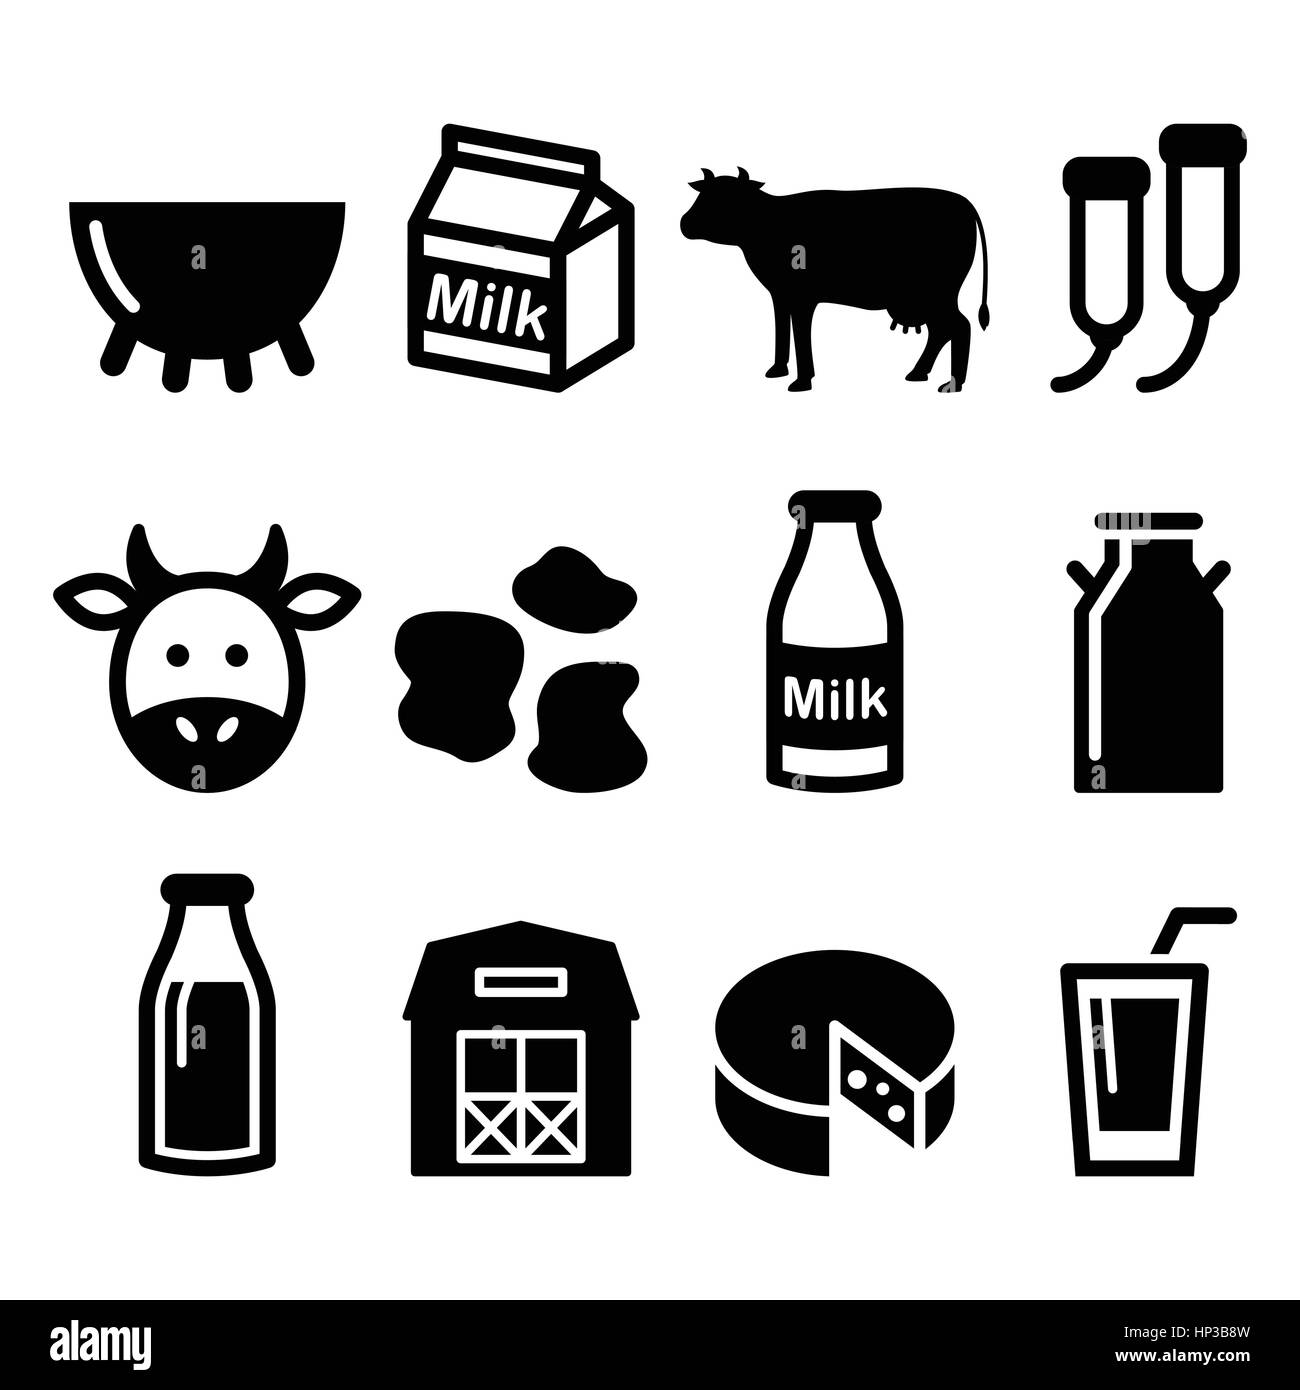 La production de lait, de fromage, de la vache vector icons set. Les animaux de ferme - vaches icons set isolated on white Illustration de Vecteur